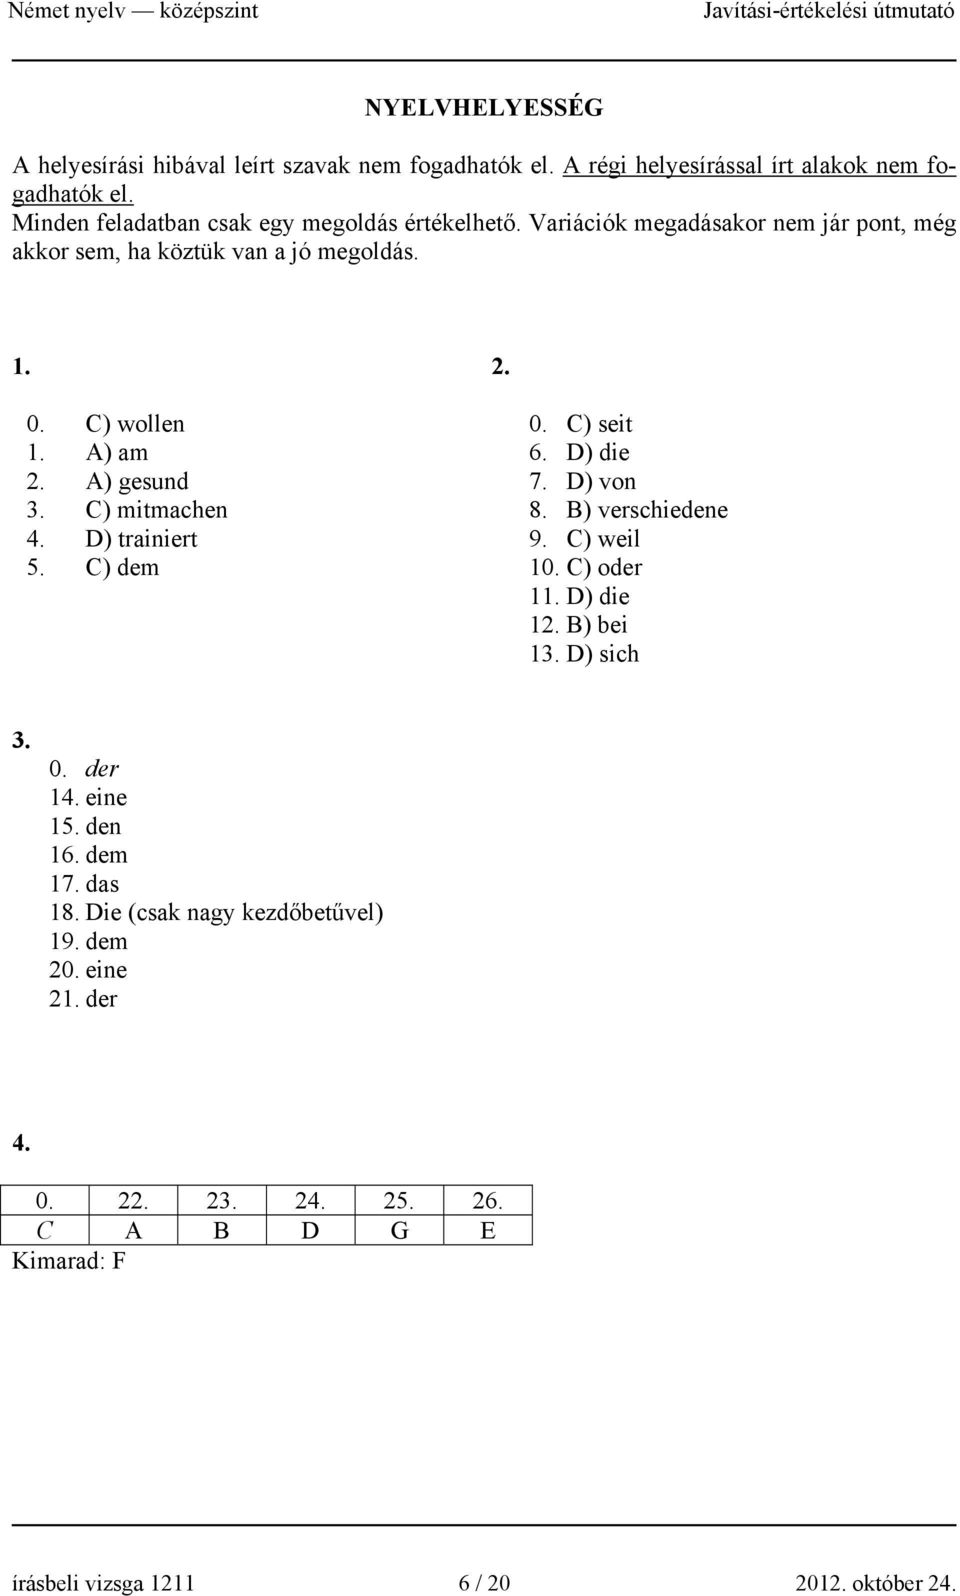 A) gesund 3. C) mitmachen 4. D) trainiert 5. C) dem 0. C) seit 6. D) die 7. D) von 8. B) verschiedene 9. C) weil 10. C) oder 11. D) die 12. B) bei 13.